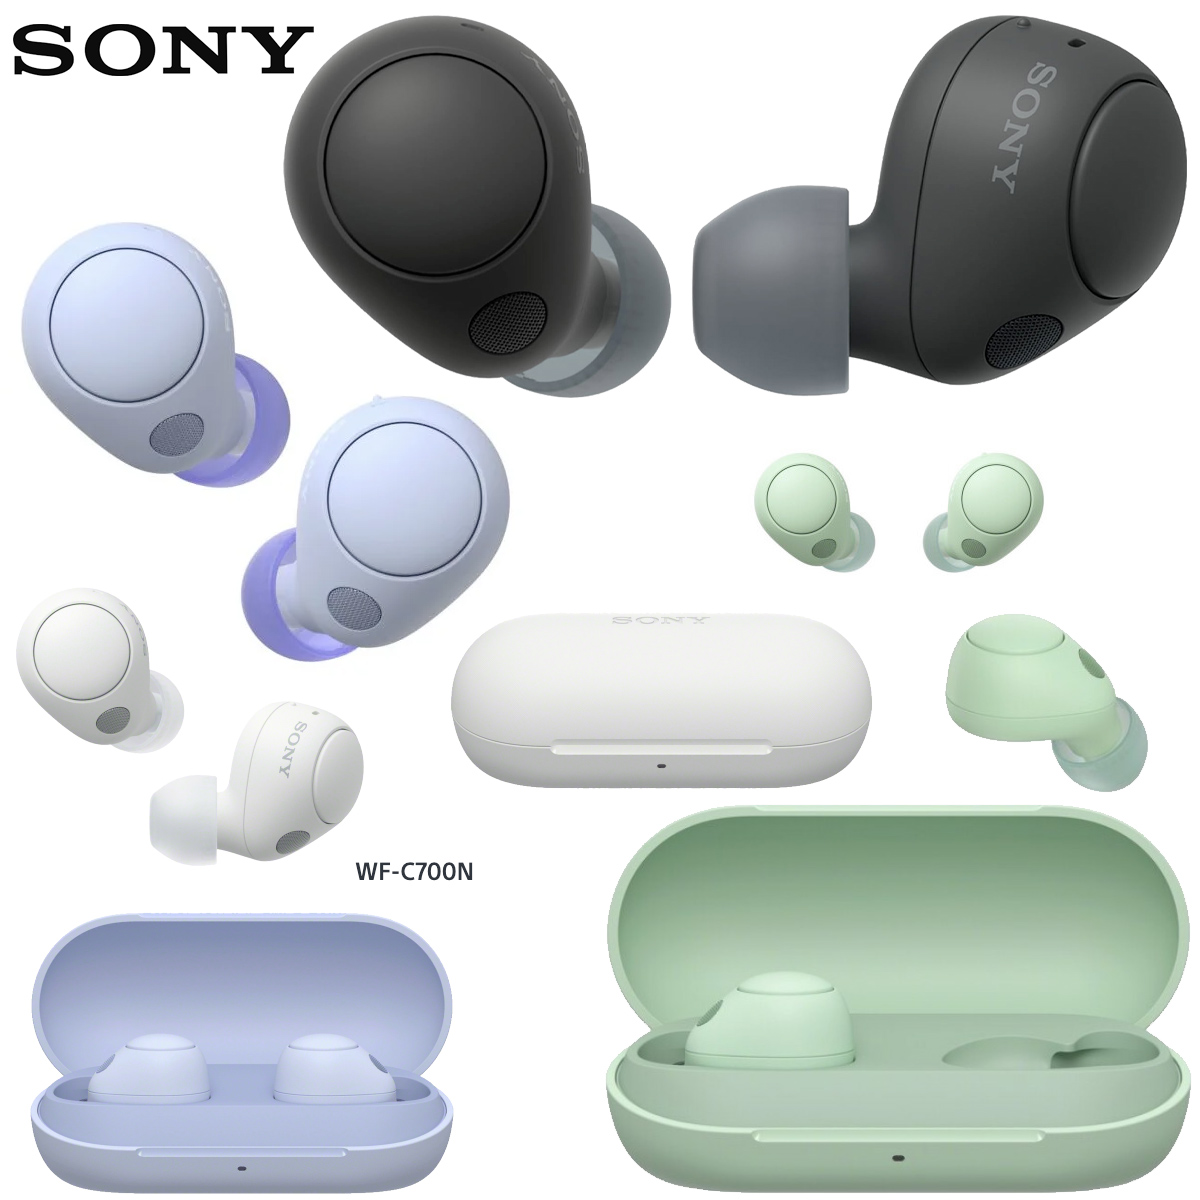 Fones de ouvido Sony WF-C700